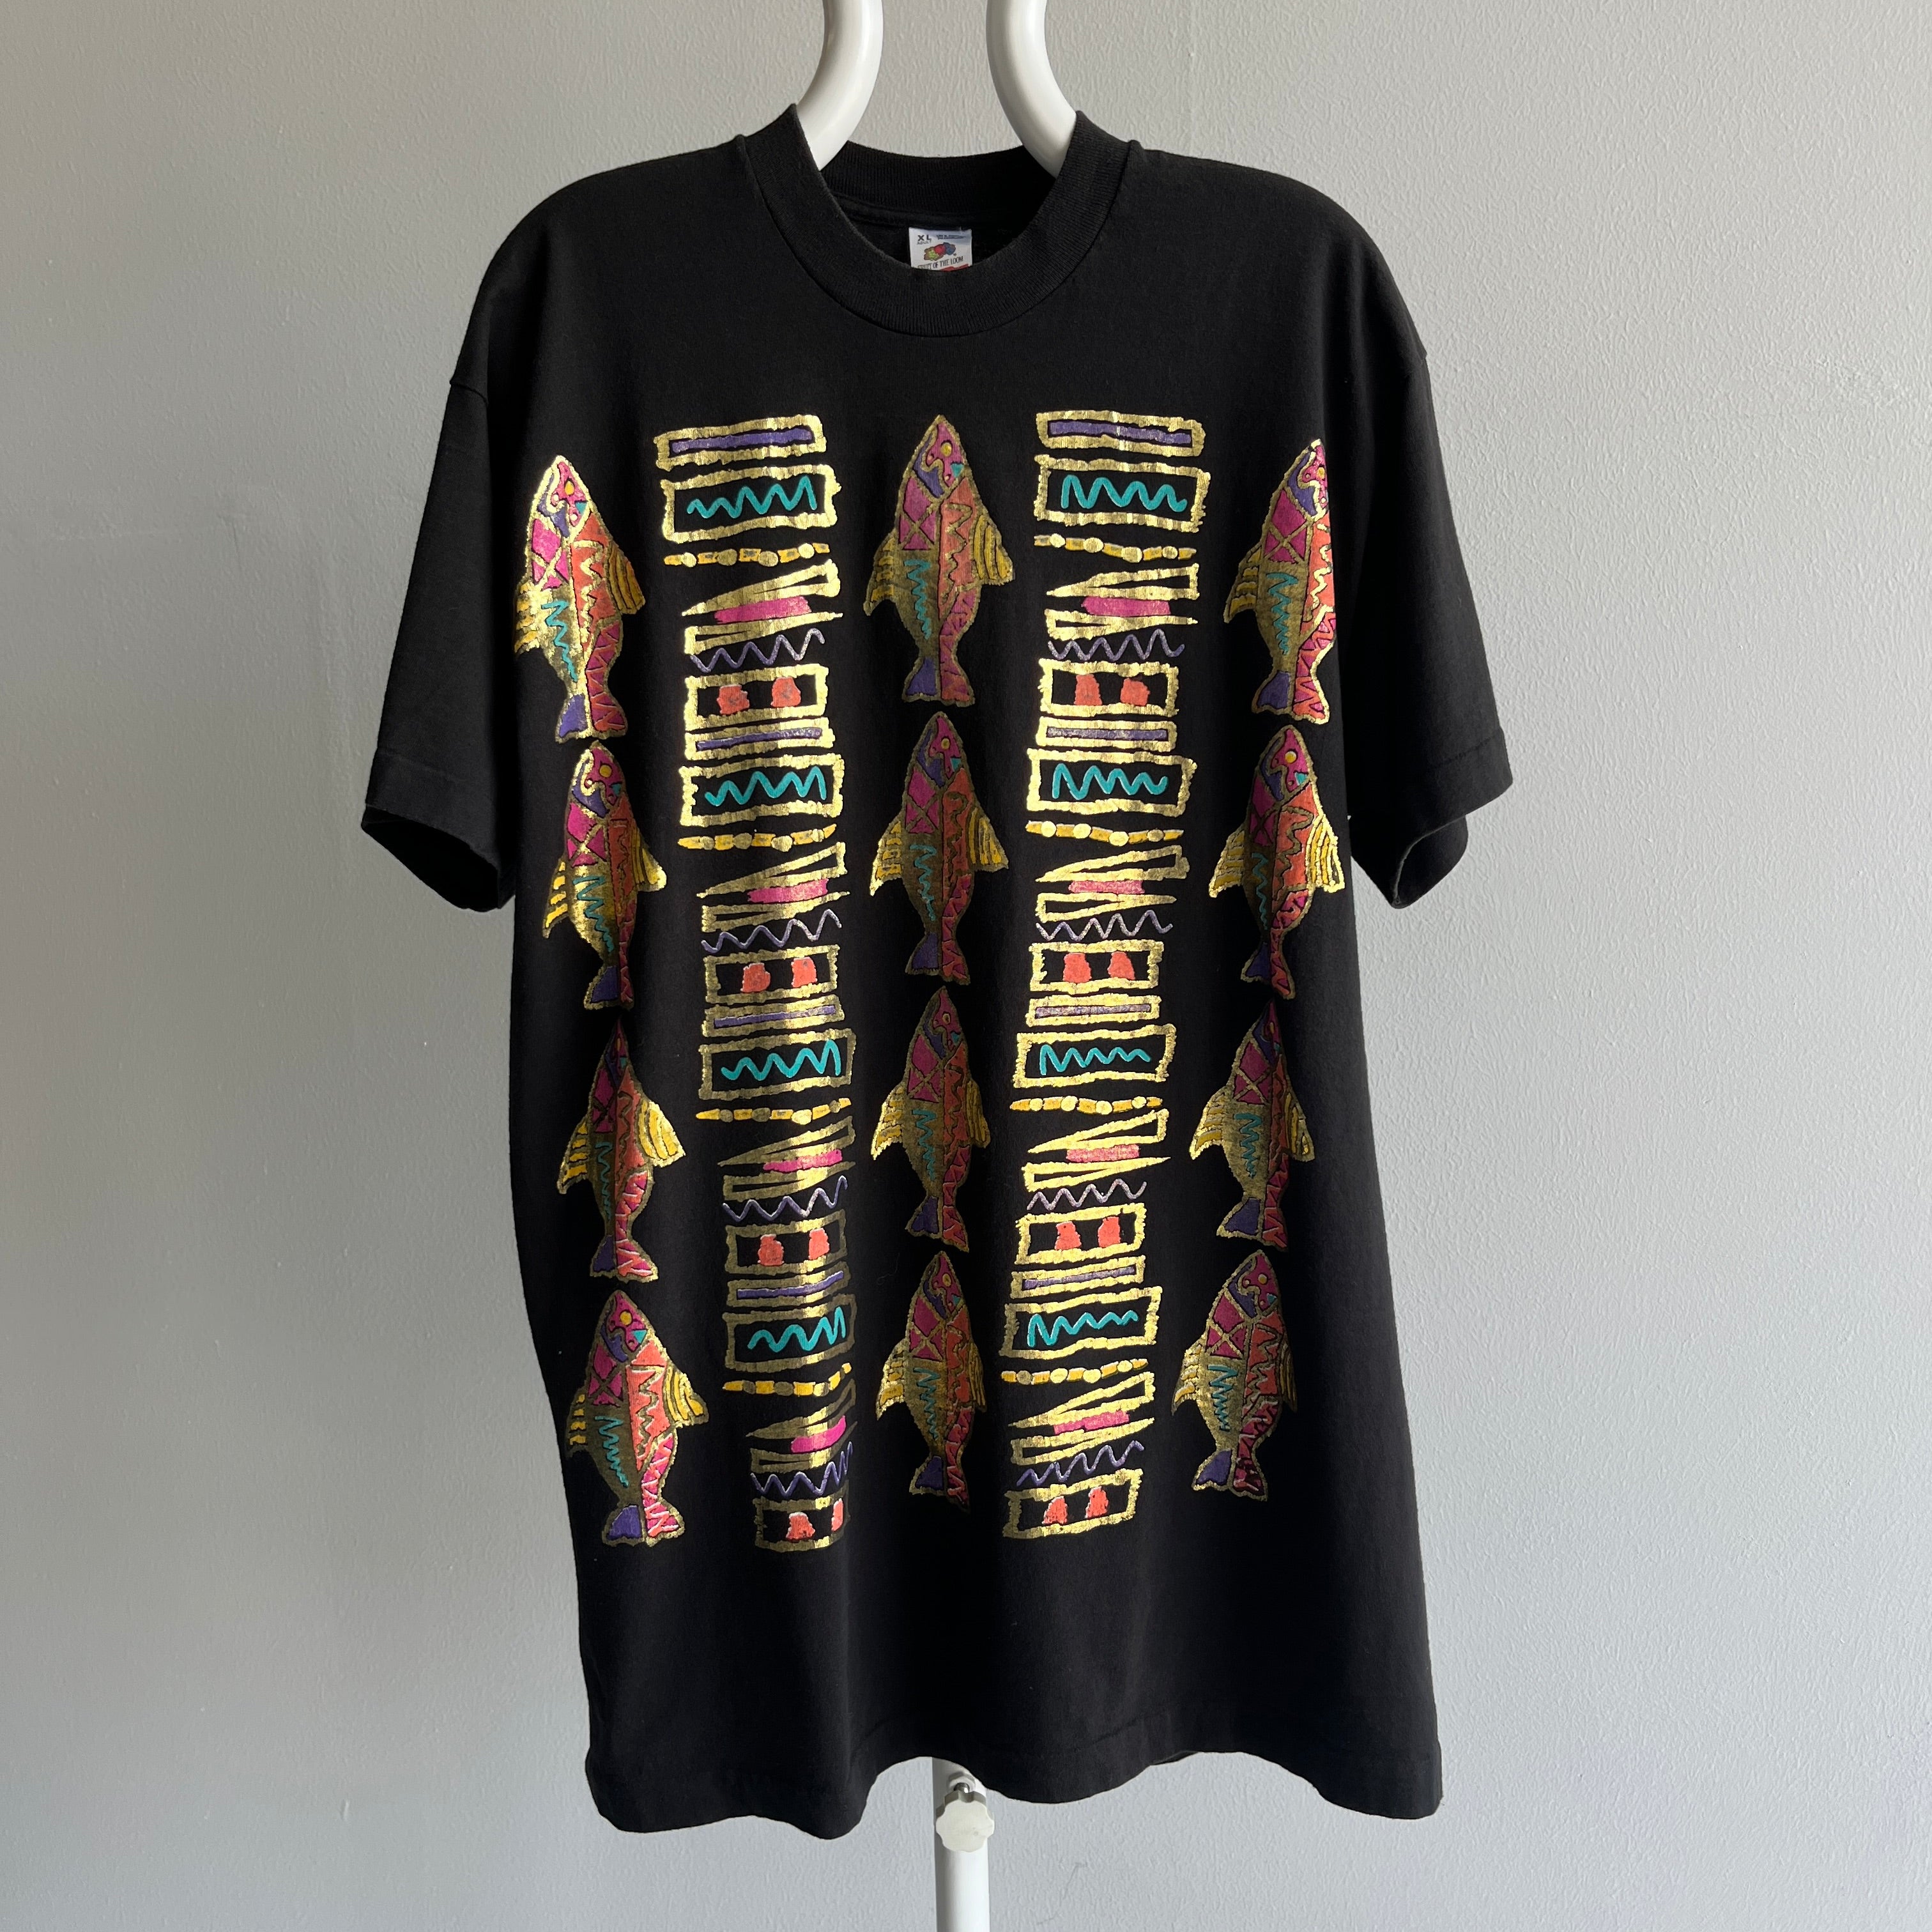 1980s Metallic Gold Fish Graphic T-Shirt